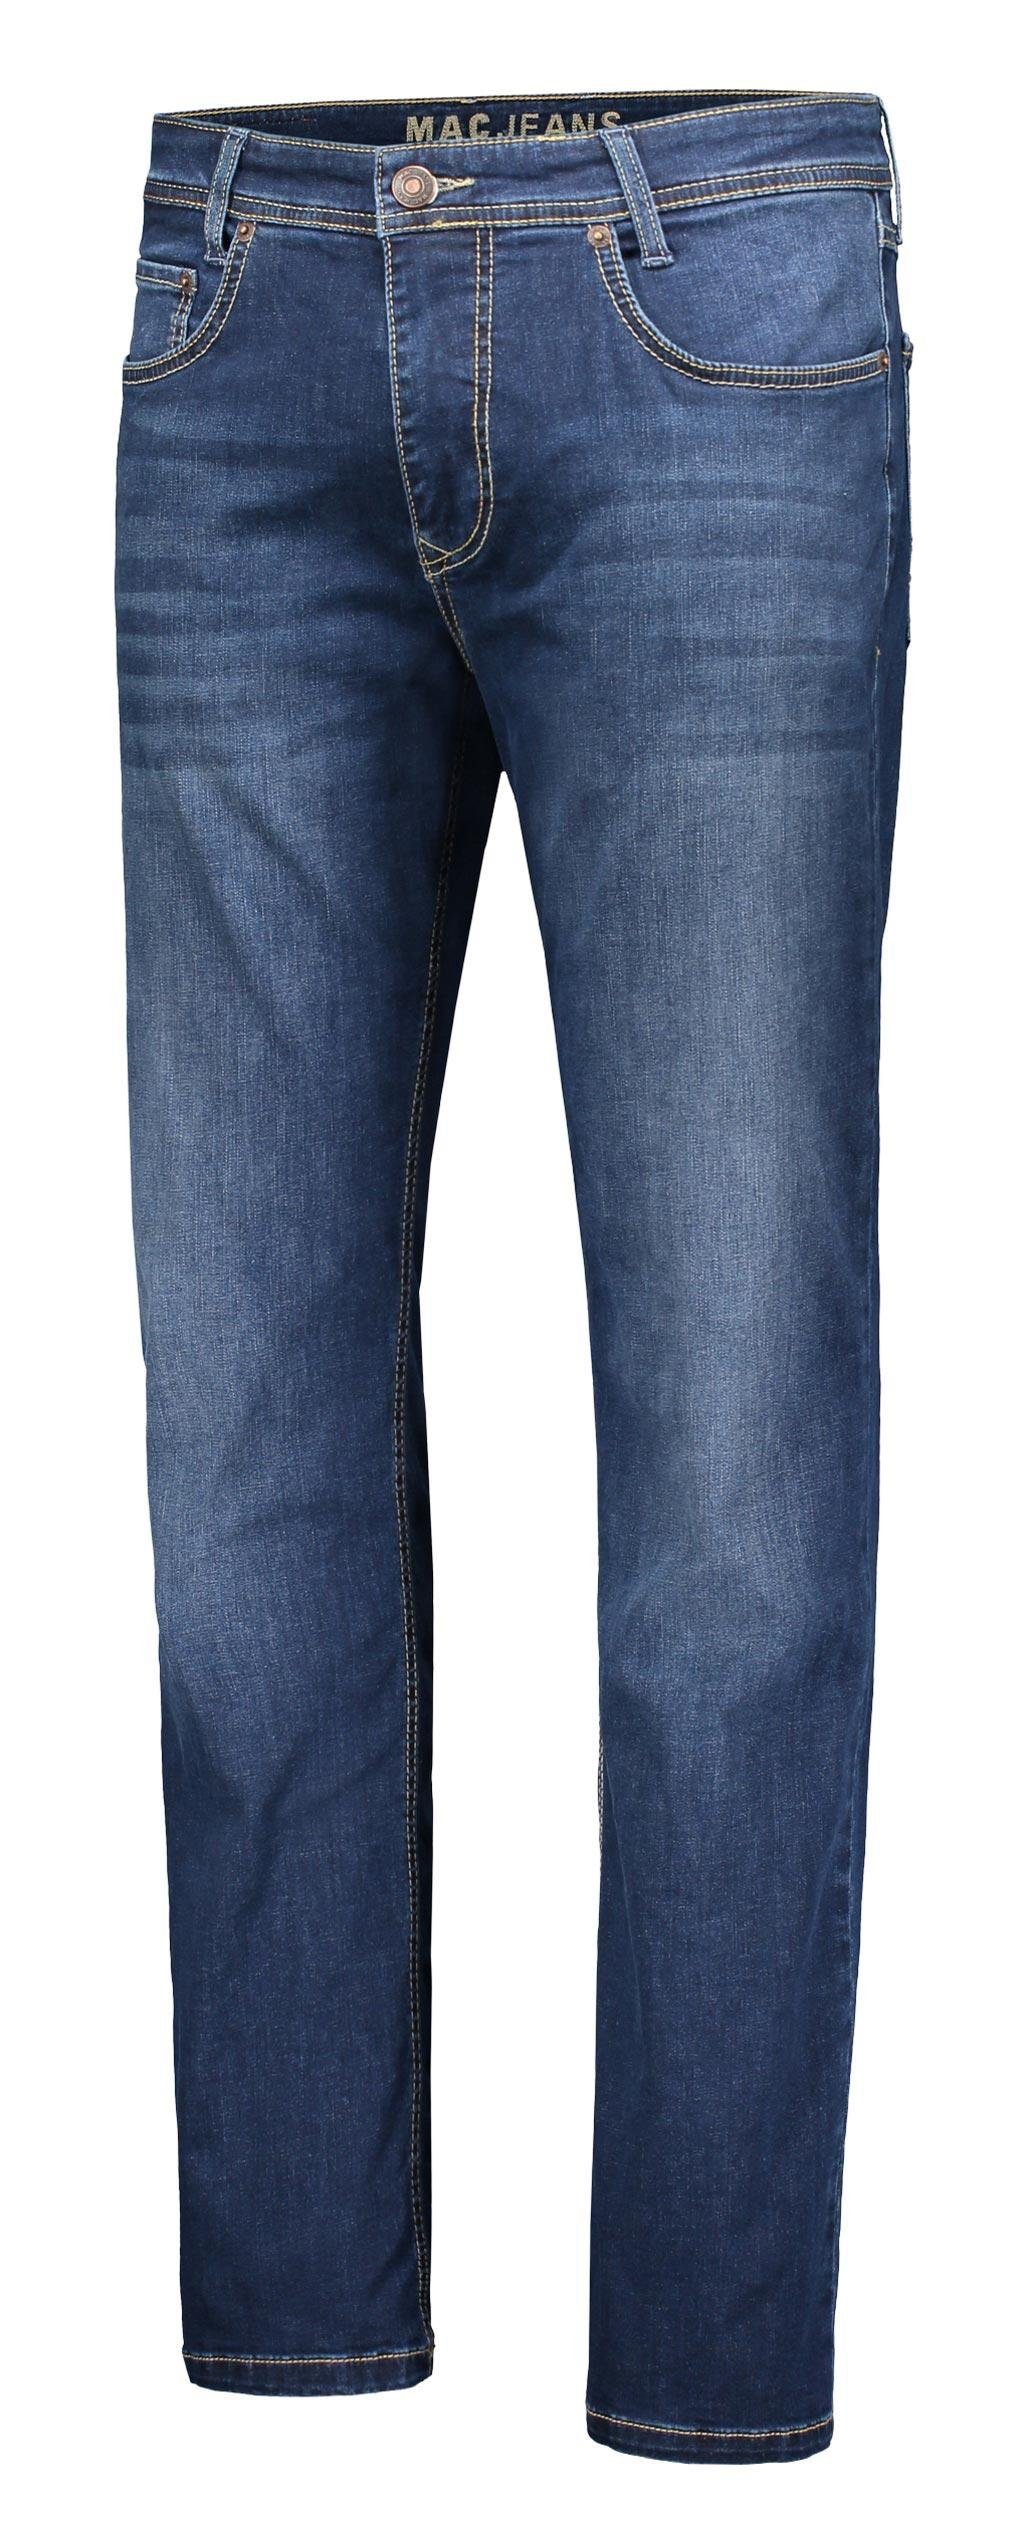 H629 dark 5-Pocket-Jeans ARNE wash 0501-00-1792 MAC authentic indigo MAC